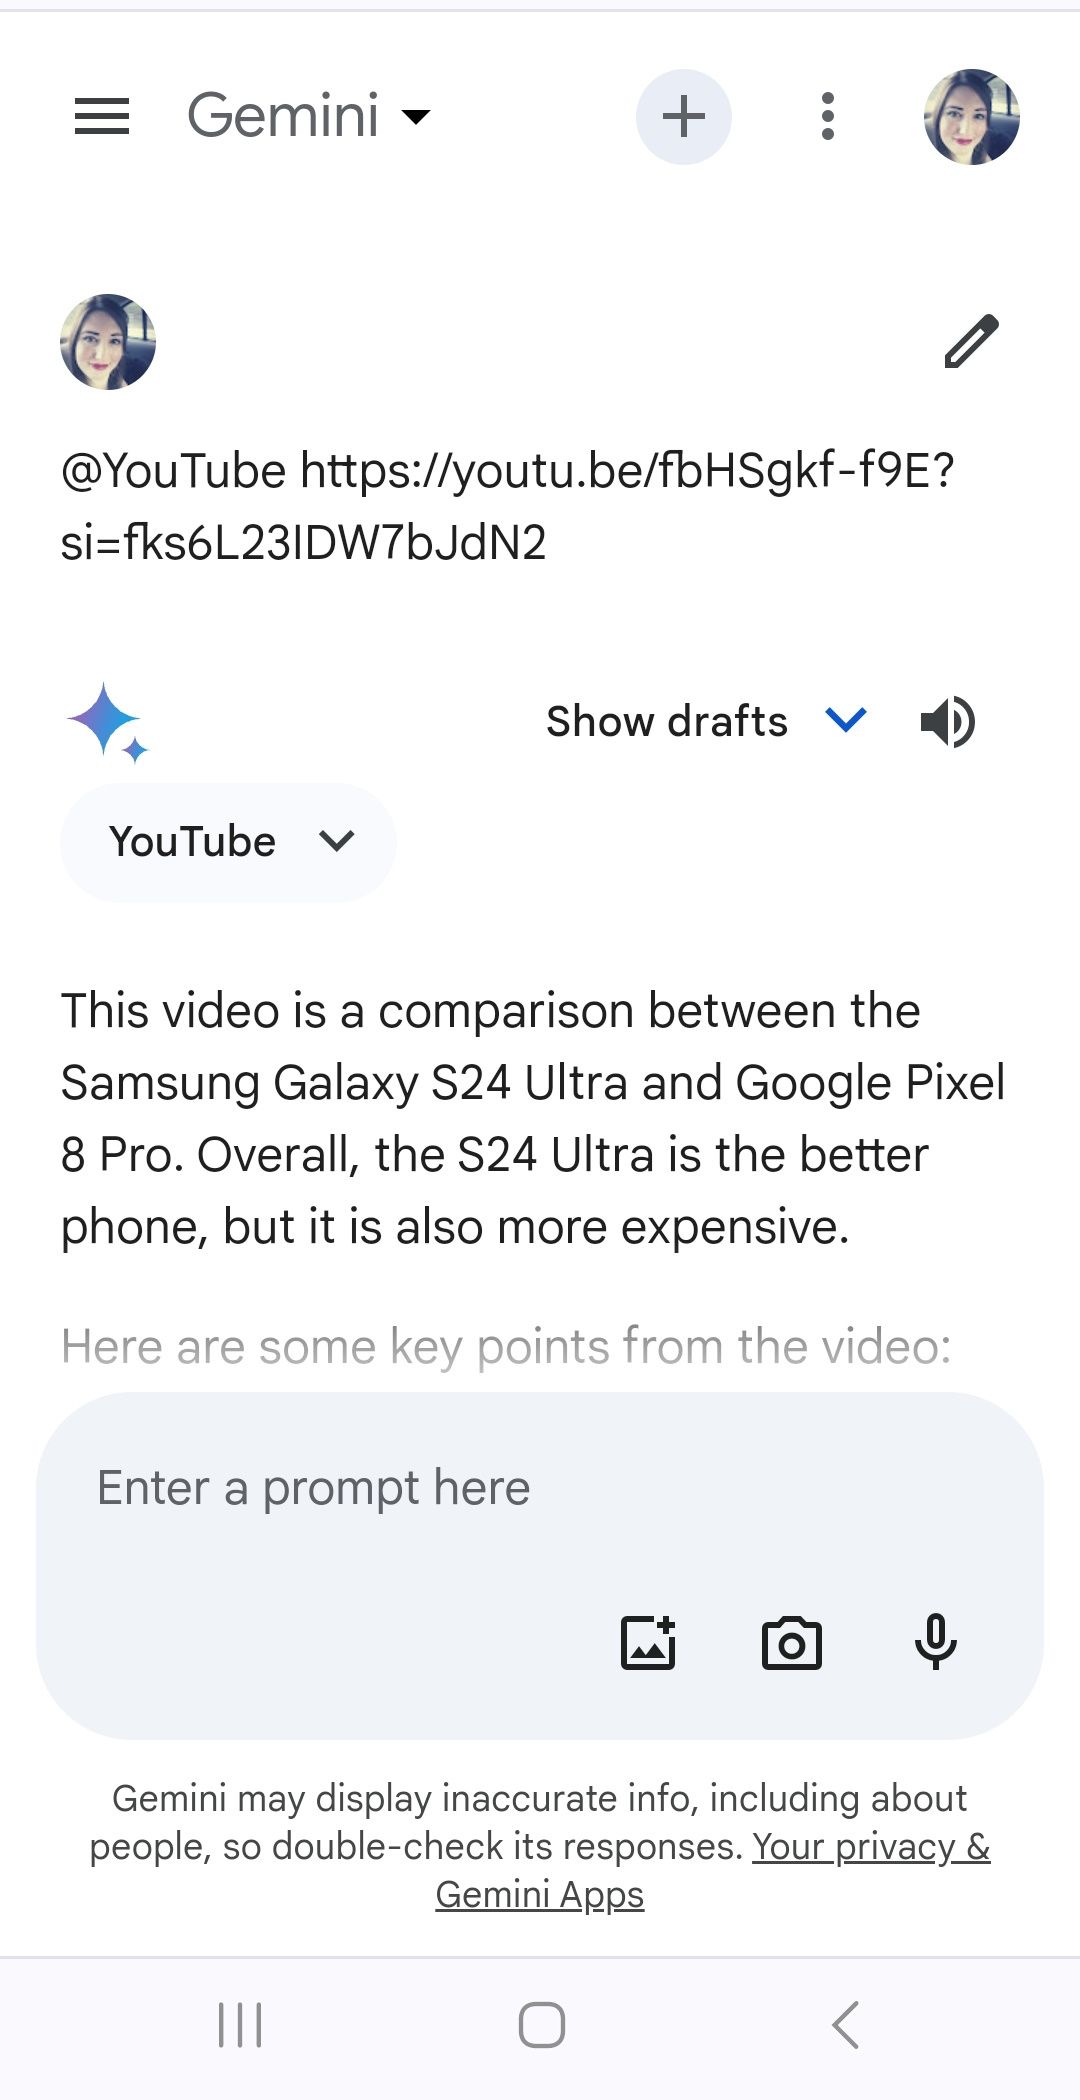 Resposta do Google Gemini à solicitação de prompt de link de vídeo do YouTube